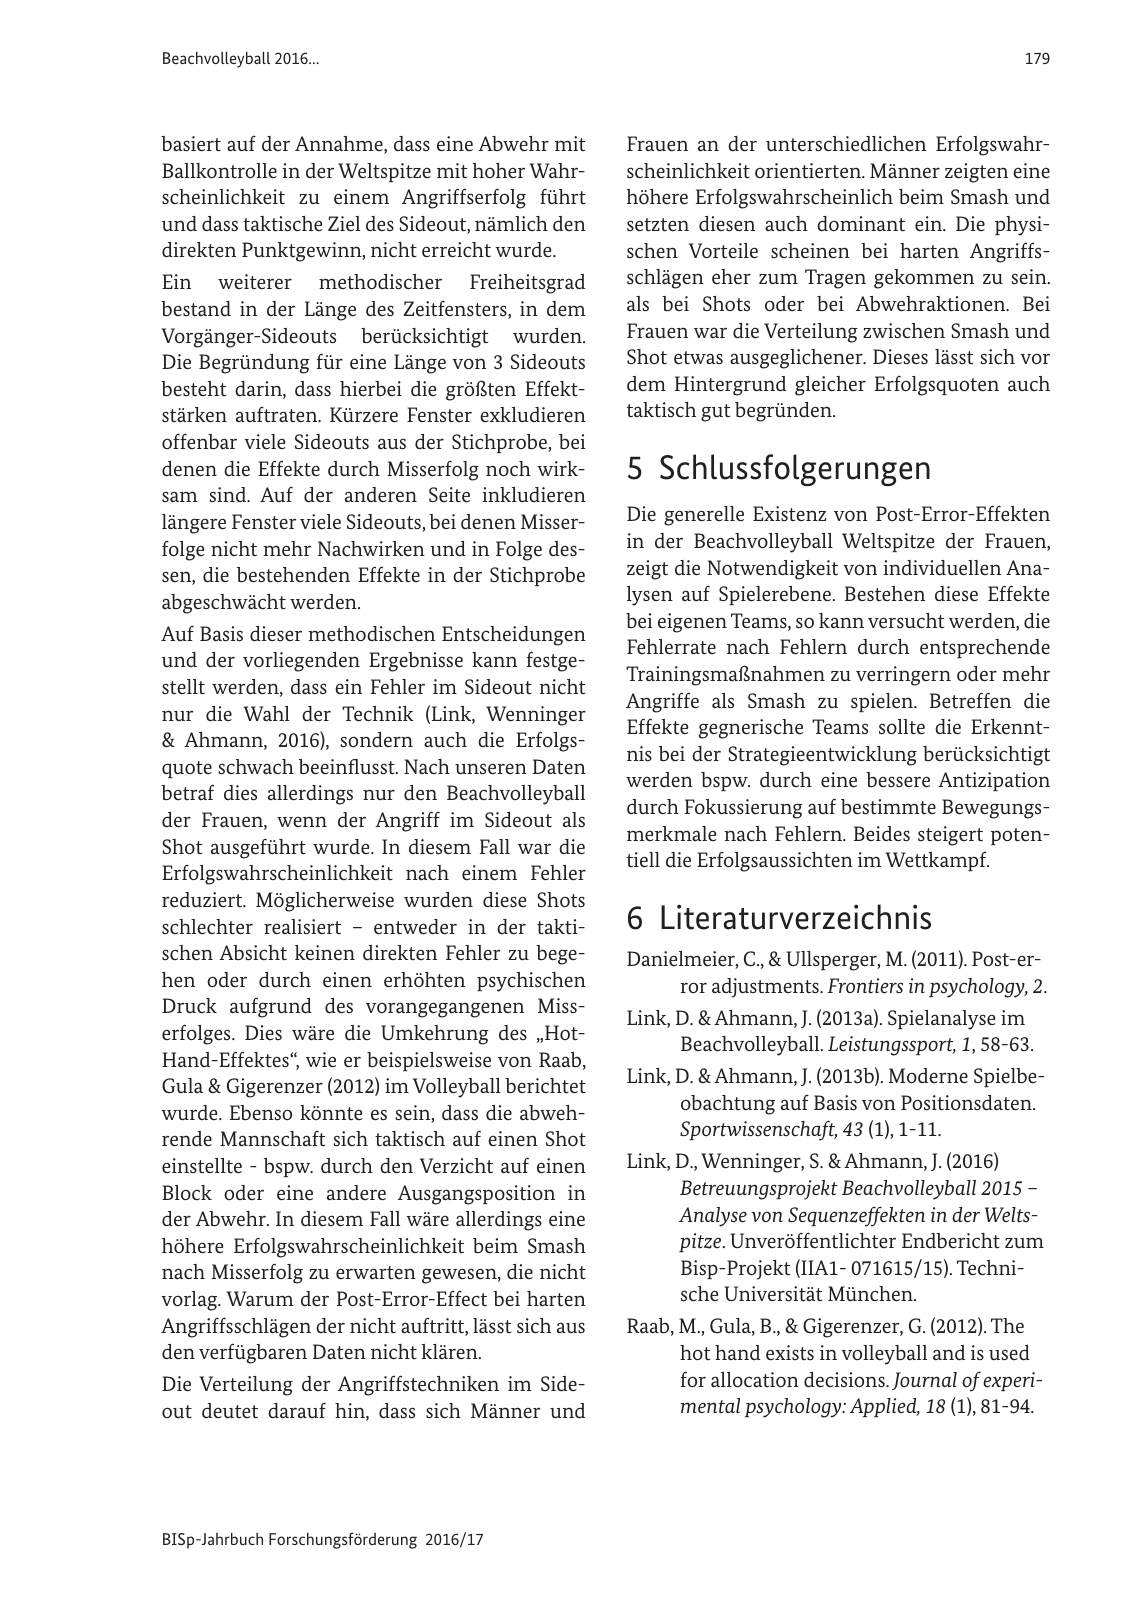 Vorschau BISp-Jahrbuch 2016/2017 Seite 181